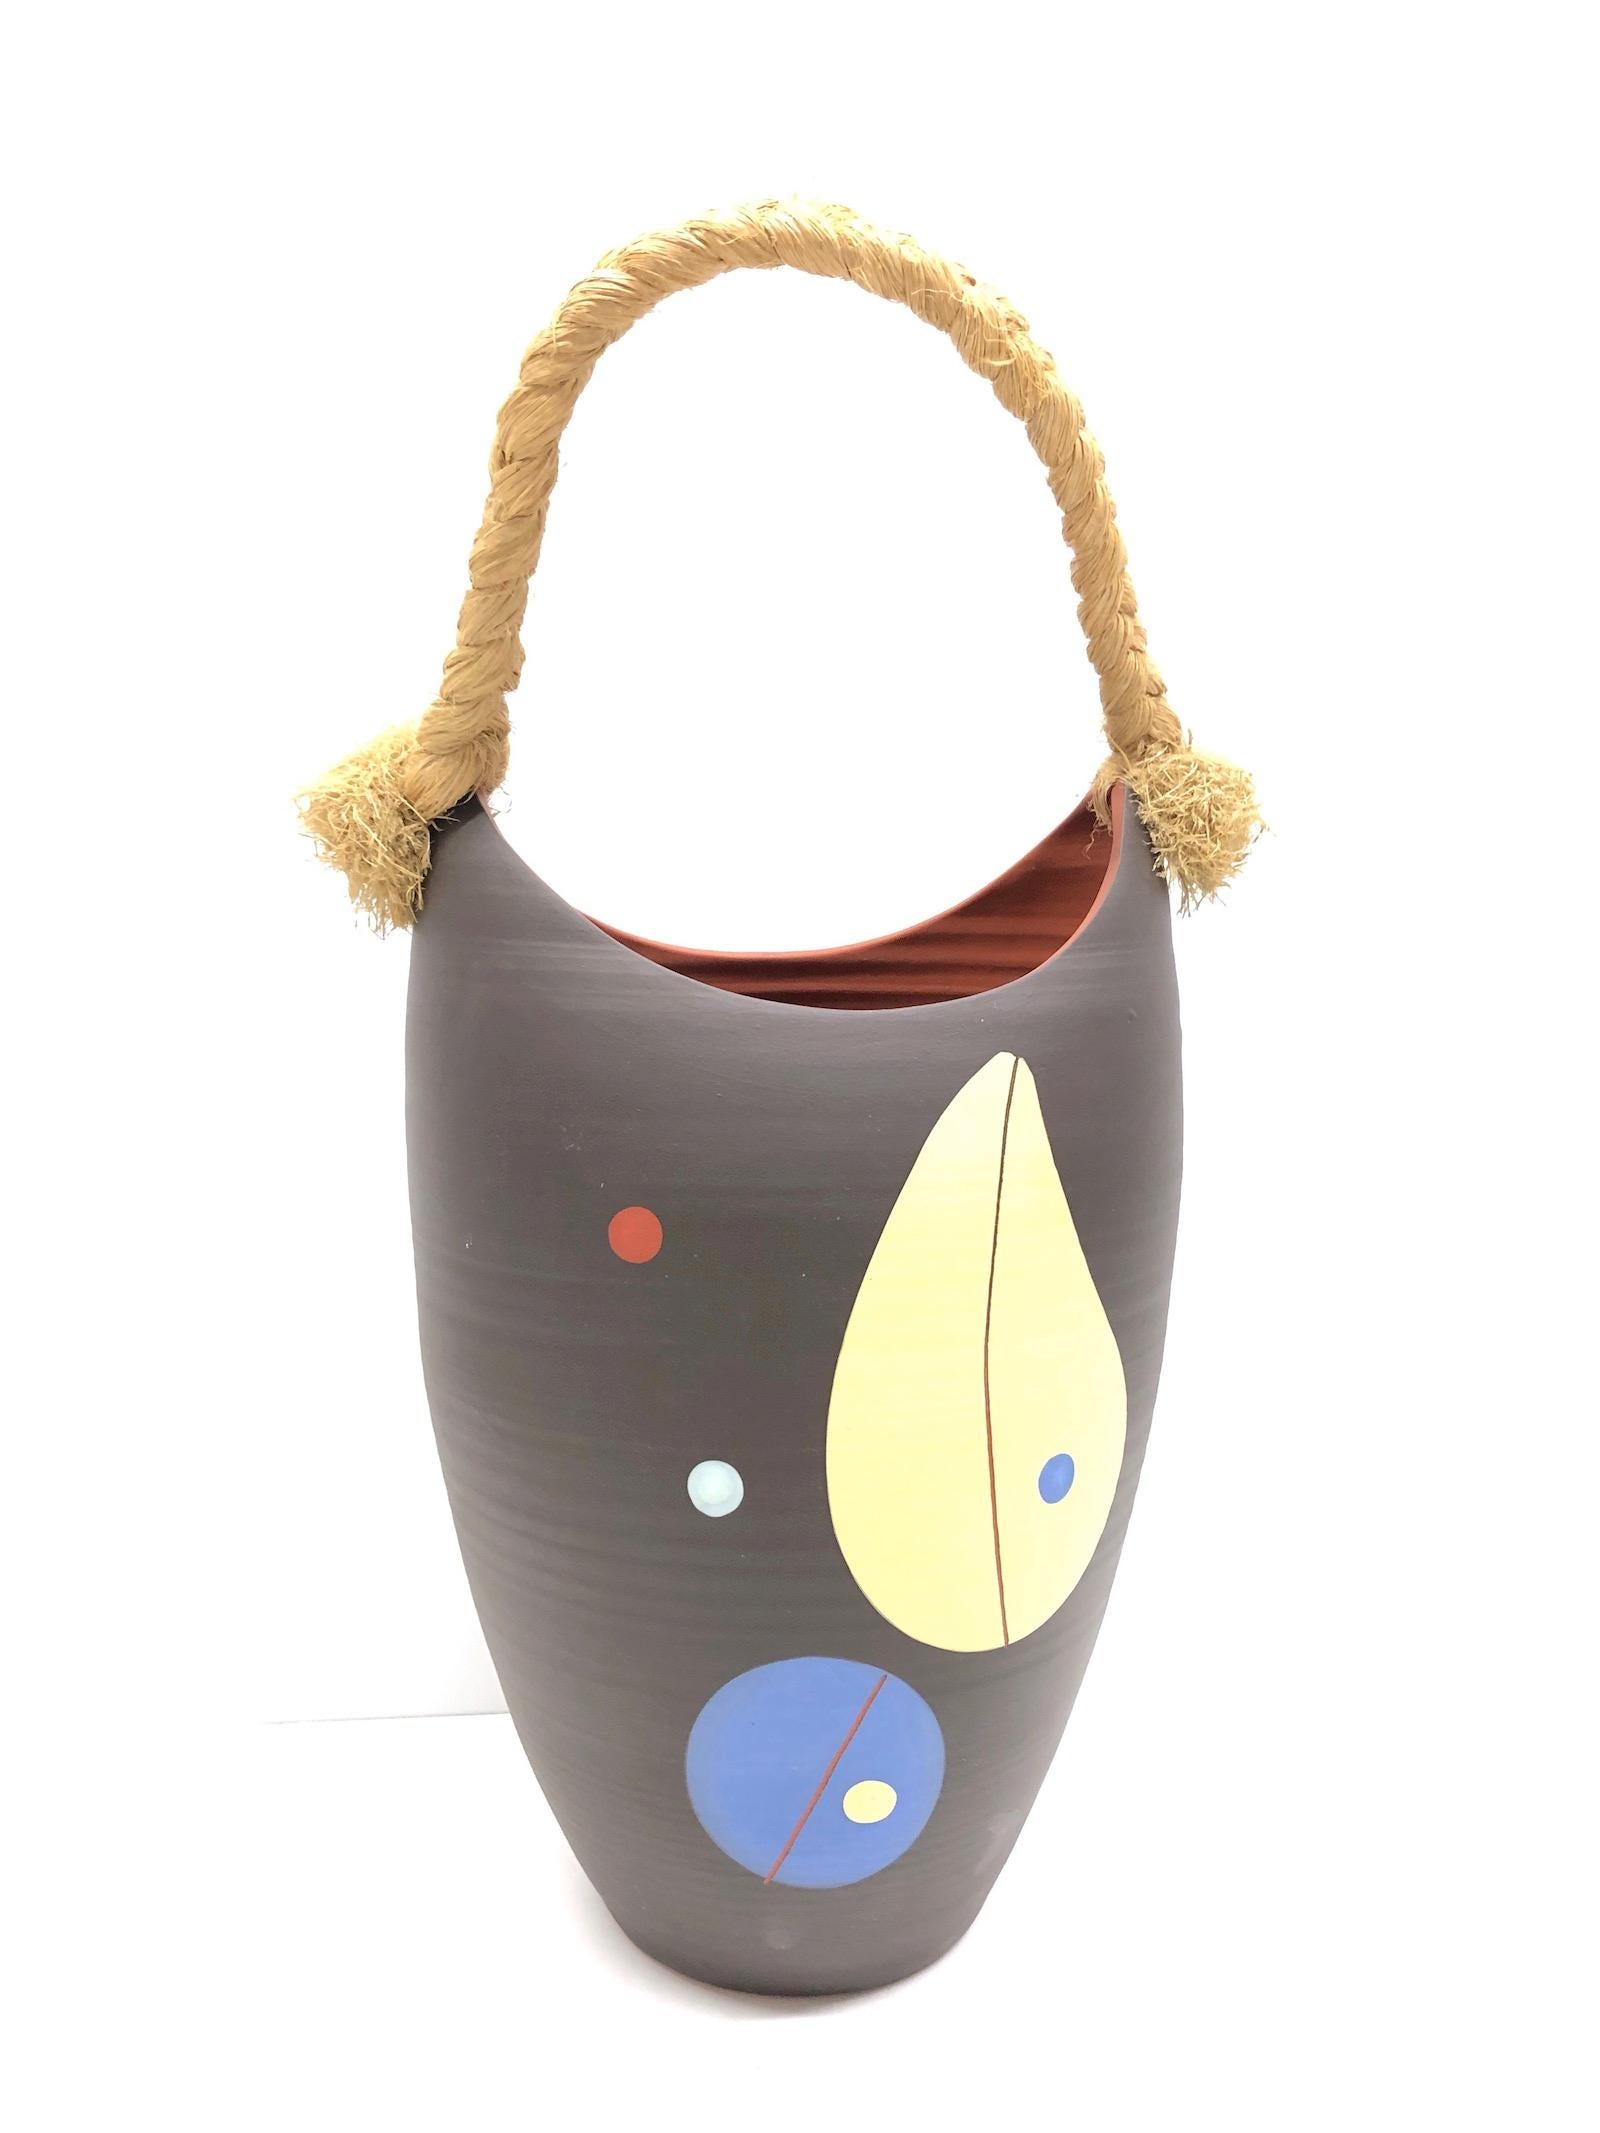 Joli vase ou récipient en poterie des années 1950, en terre cuite naturelle. Marqué 74/35 numéro de formulaire. Reflétant le style asiatique typique populaire dans les années 1950, il constituera un bel ajout à tout bureau ou salle d'attente. Il